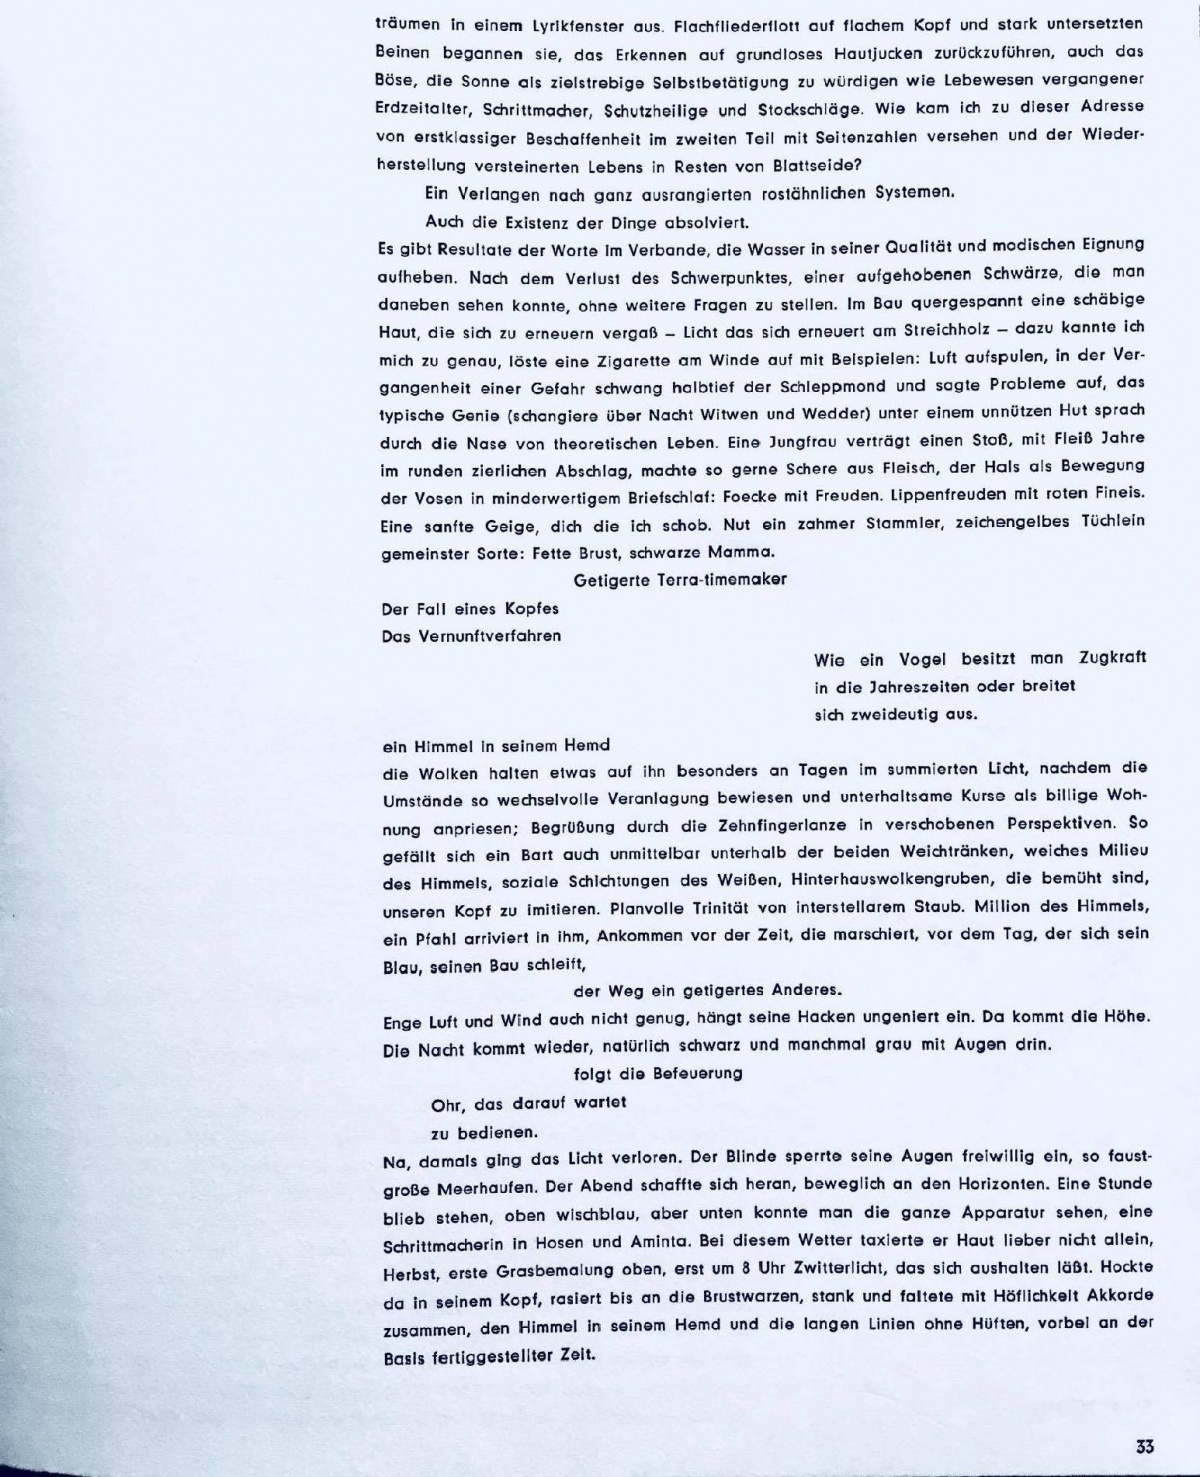 ein glänzendes alleinsein, S.33 movens, Bild: Publikation movens. Dokumente und Analysen zur Dichtung, bildenden Kunst, Musik, Architektur, 1960.